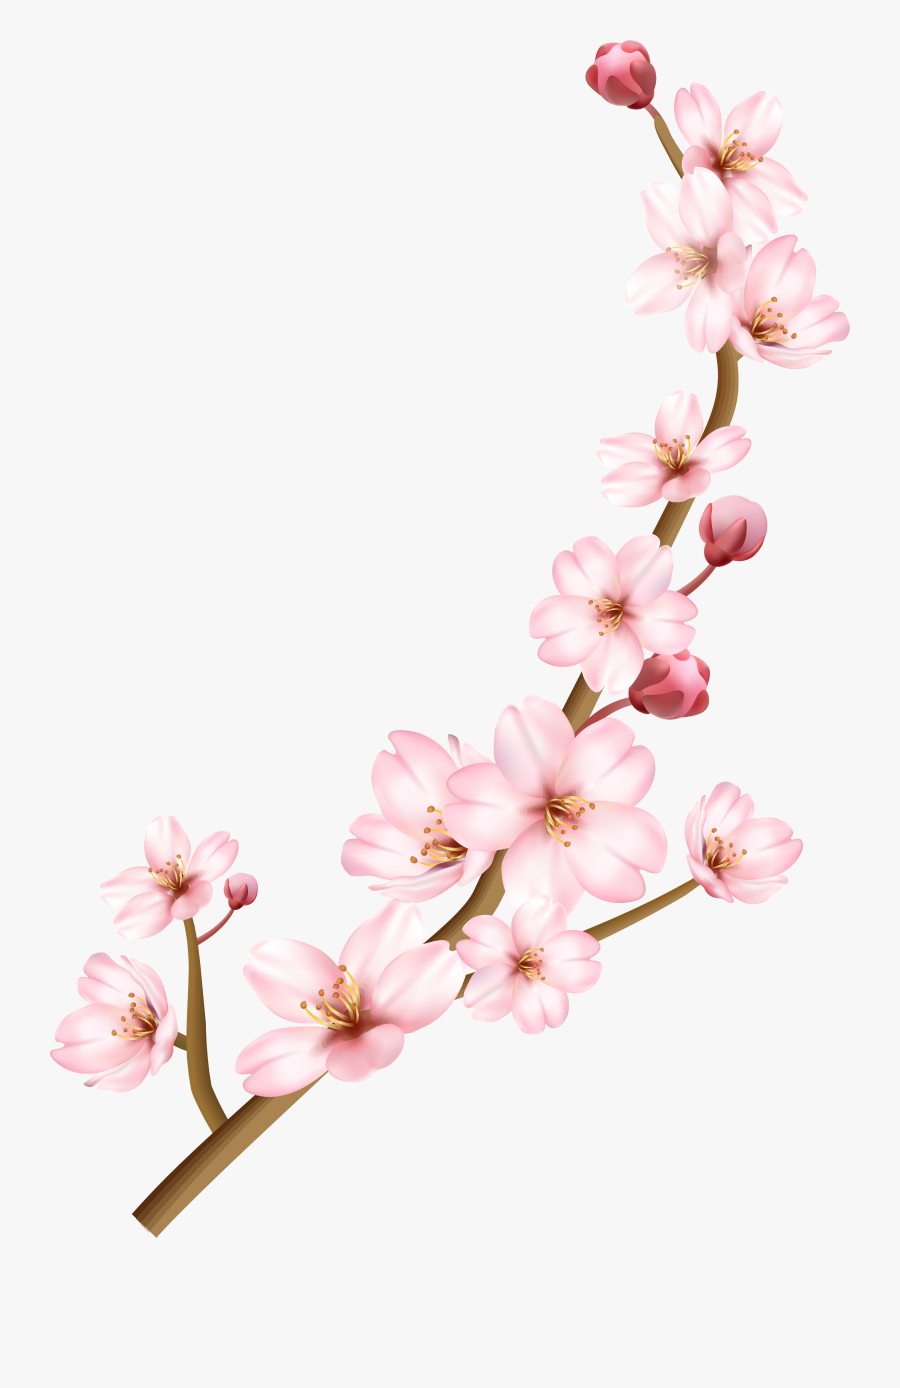 Blossom - Cherry Blossoms Transparent Background, Transparent Clipart